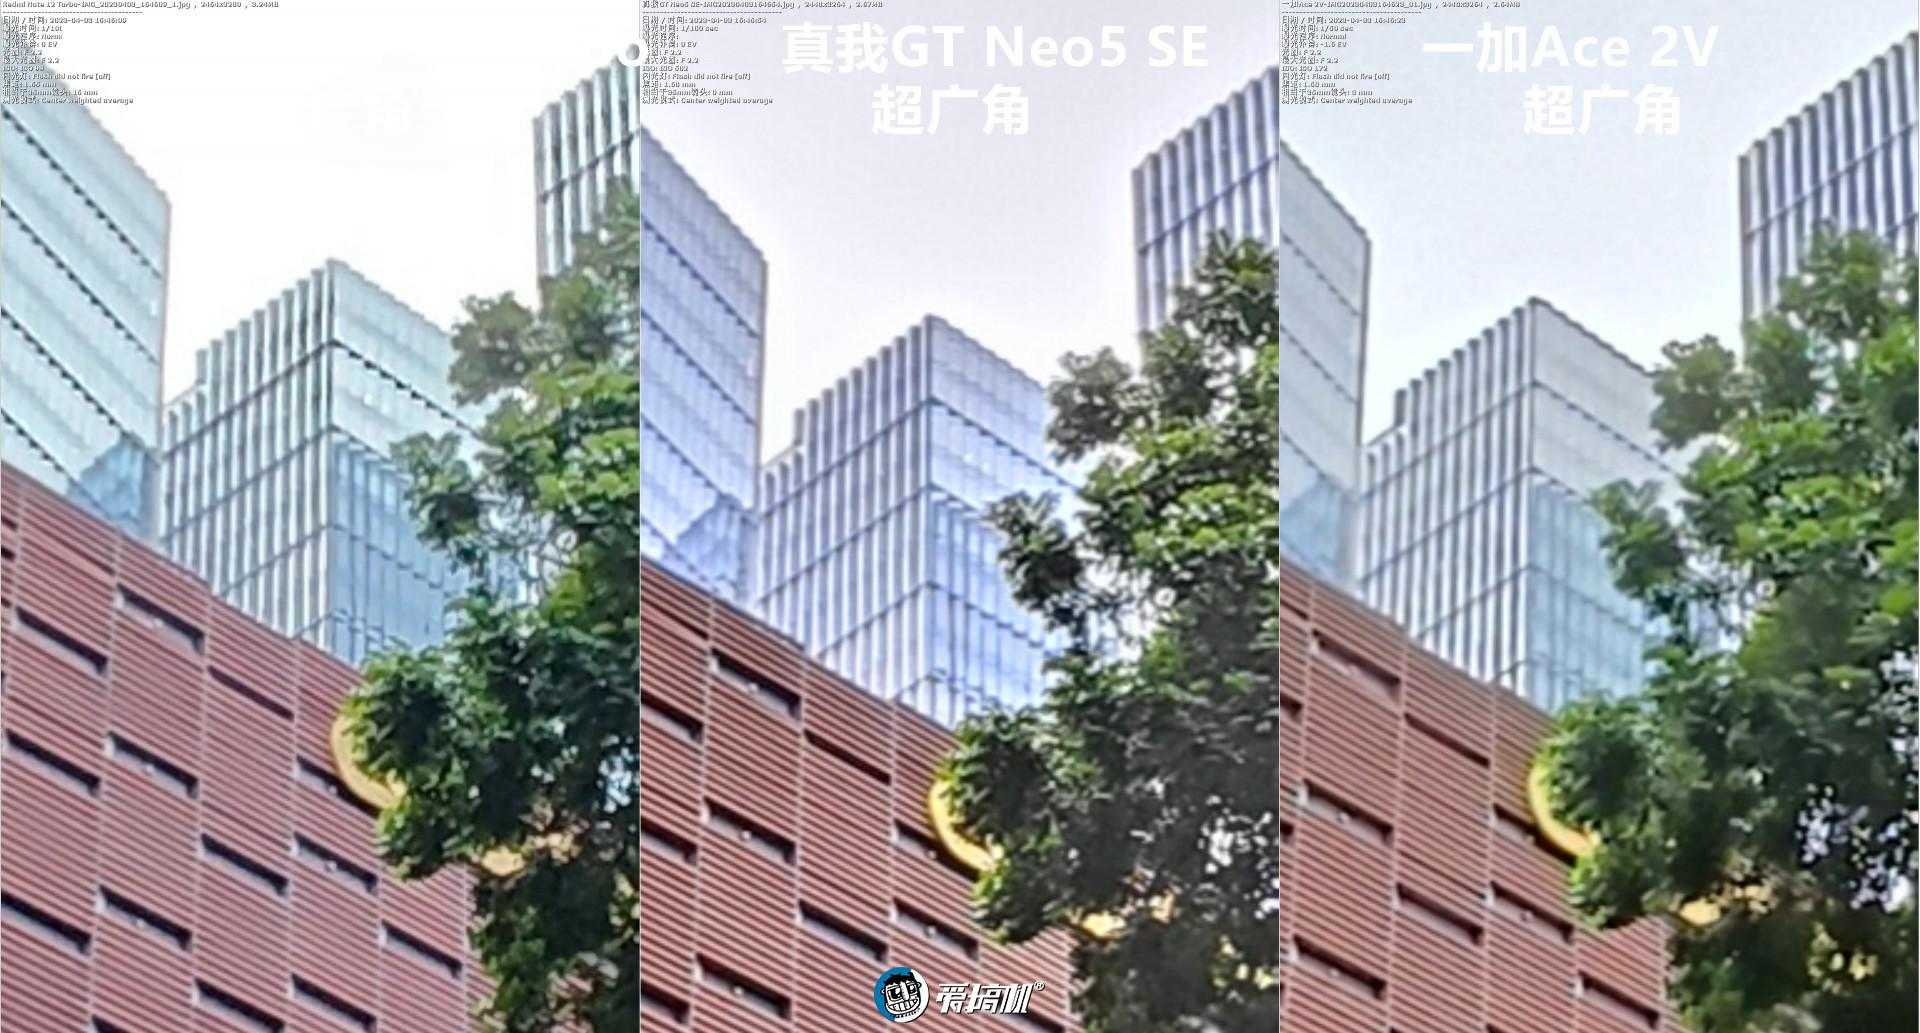 真我GTNeo5SE和Note 12T、一加Ace2V谁的拍照好?手机拍照对比